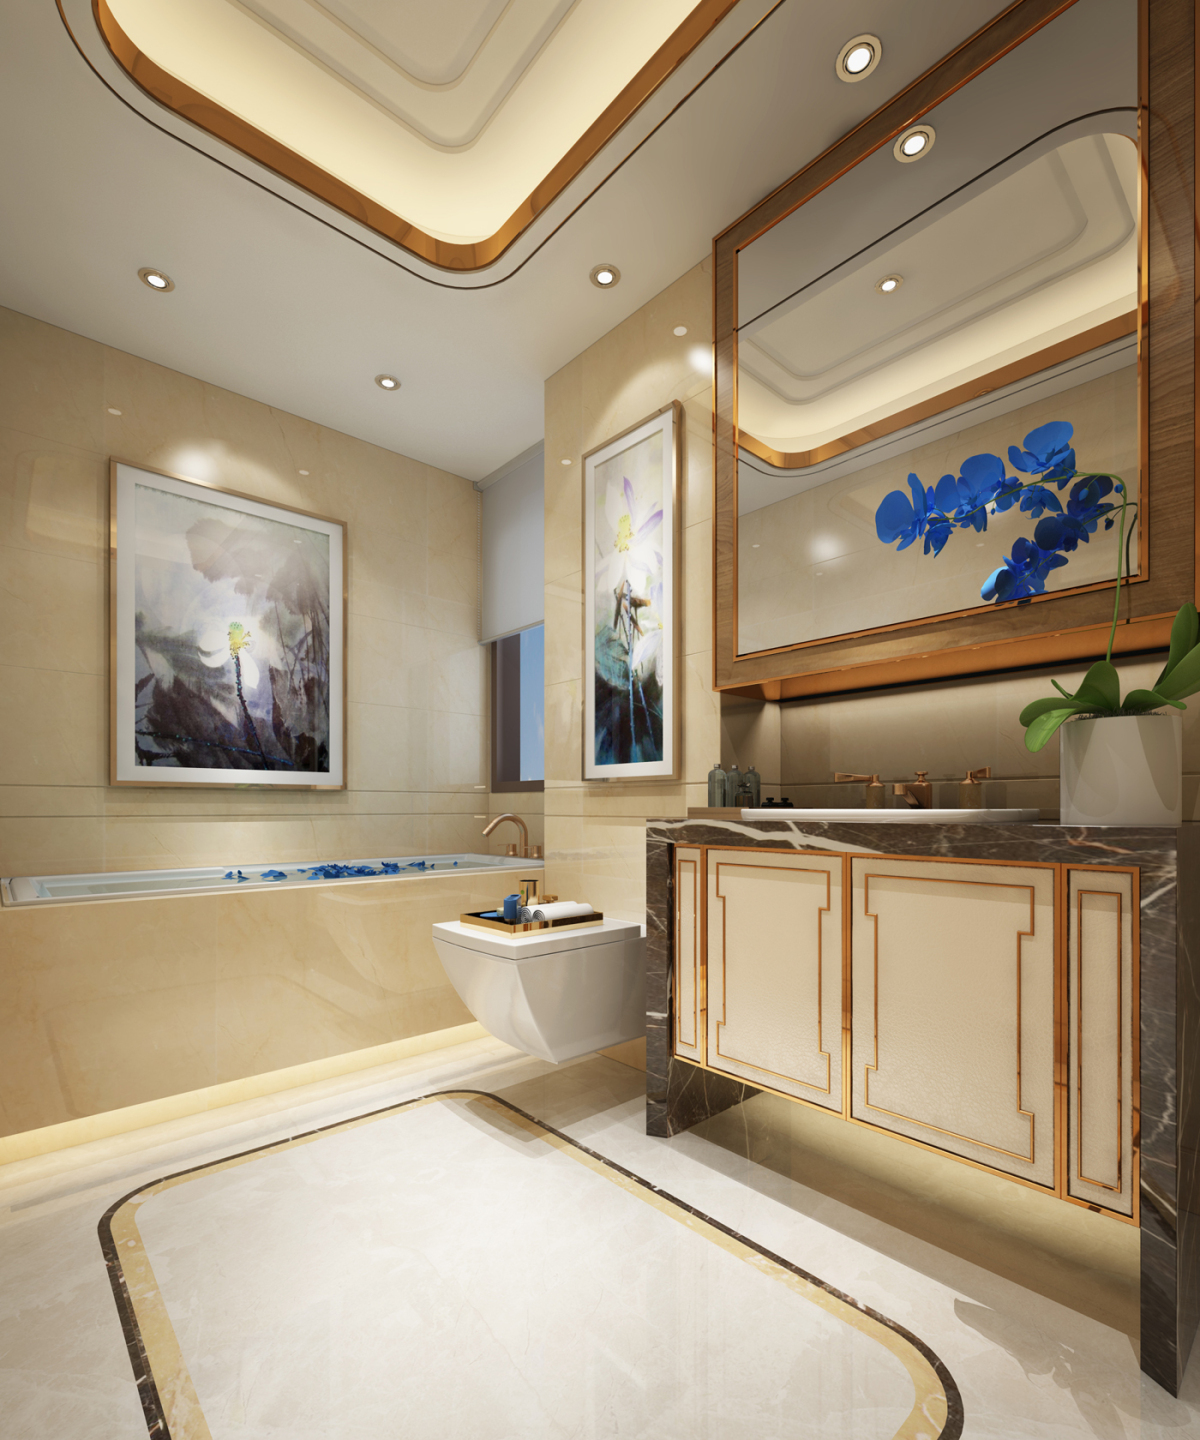 中式风格别墅豪华大卫生间干湿分离淋浴房梳妆台装修效果图 – 设计本装修效果图